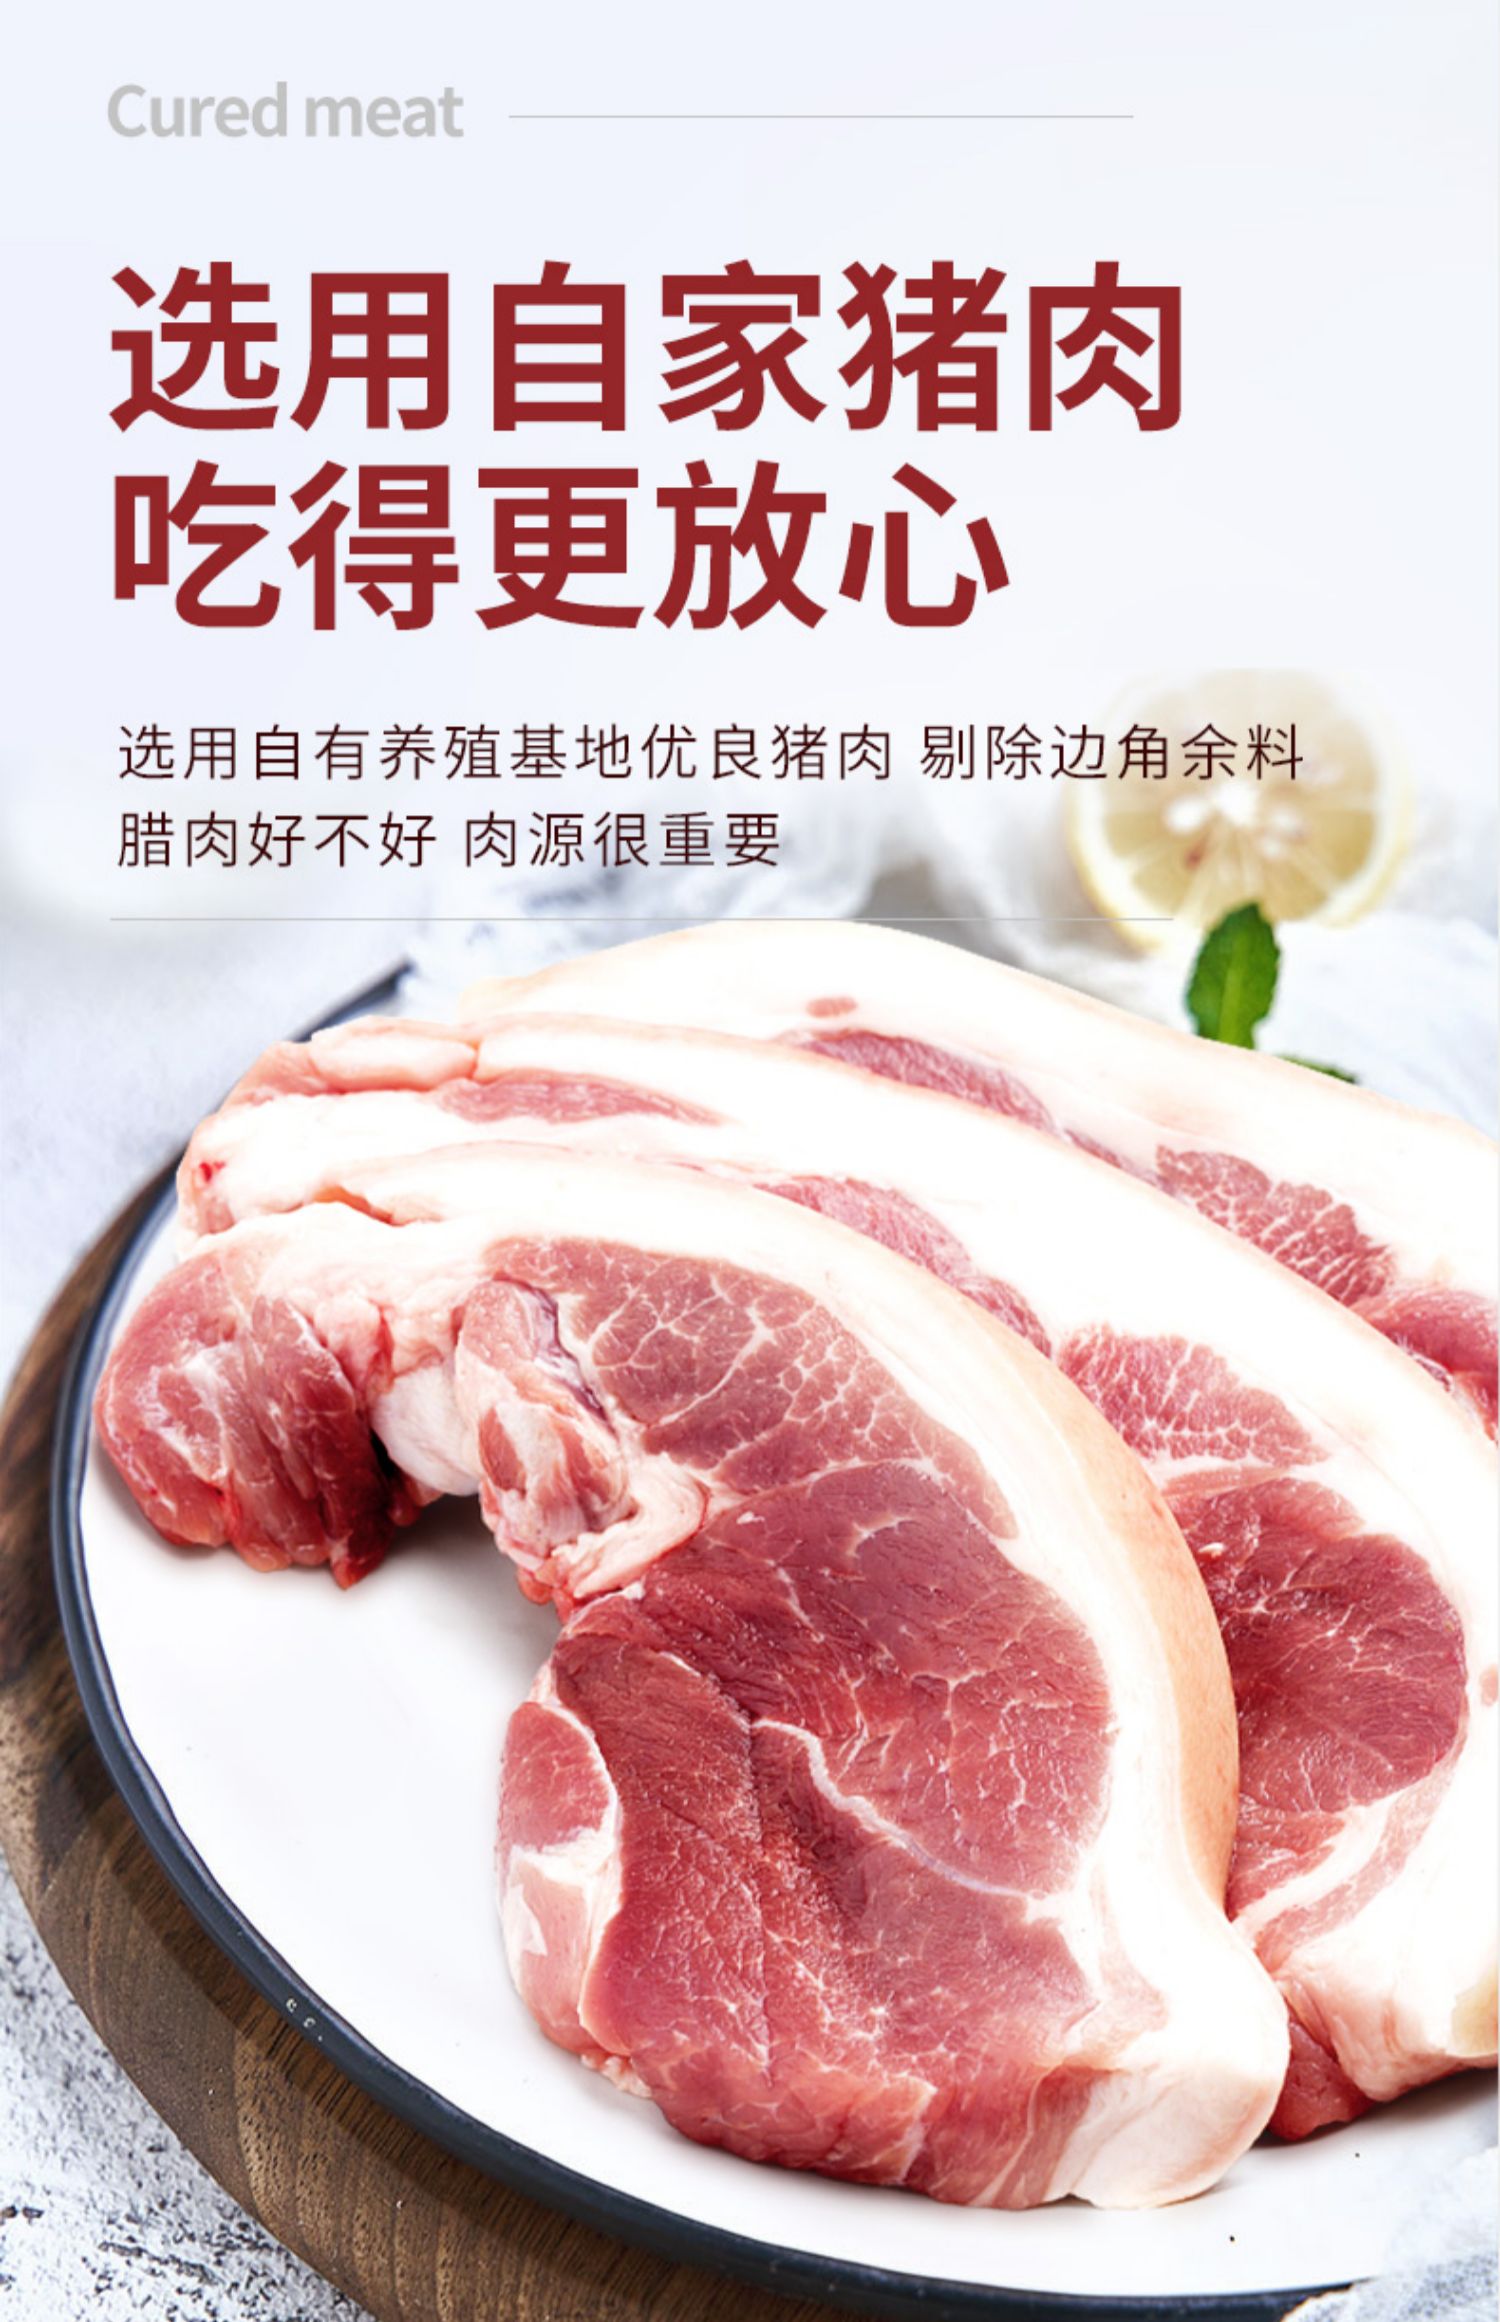 【唐人神】切片腊肉/熏肉100g*2